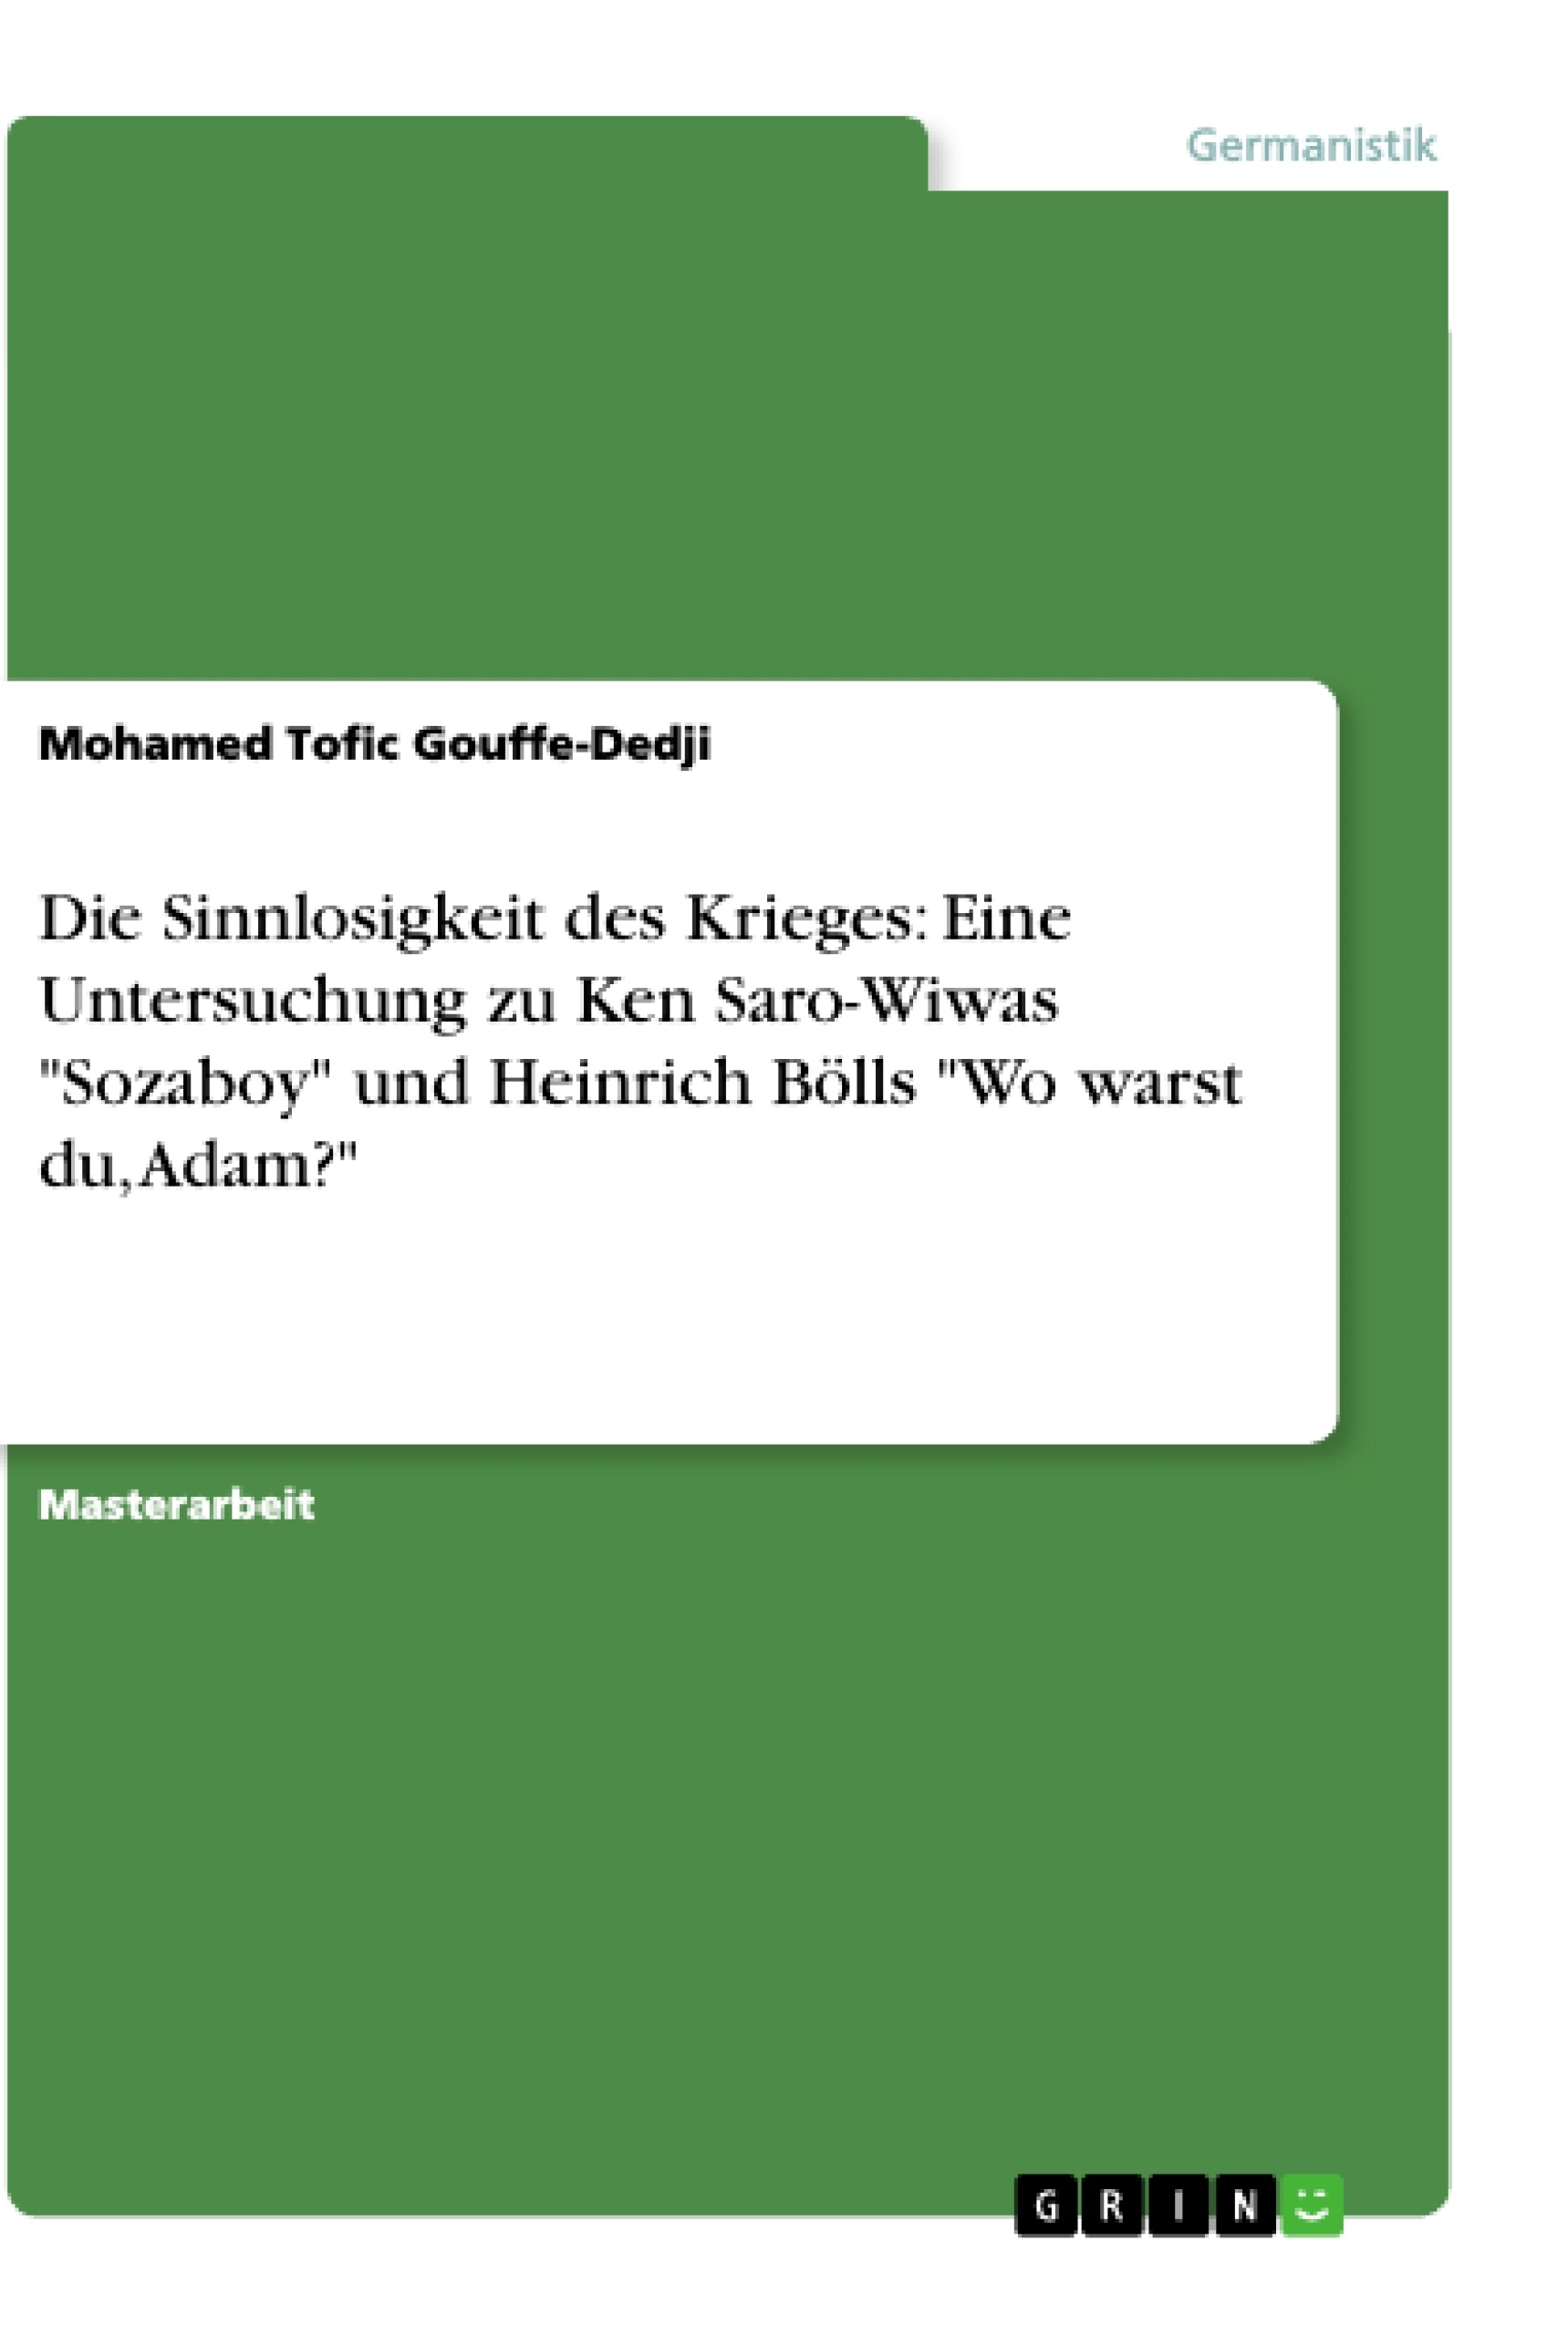 Título: Die Sinnlosigkeit des Krieges: Eine Untersuchung zu Ken Saro-Wiwas "Sozaboy" und Heinrich Bölls "Wo warst du, Adam?"